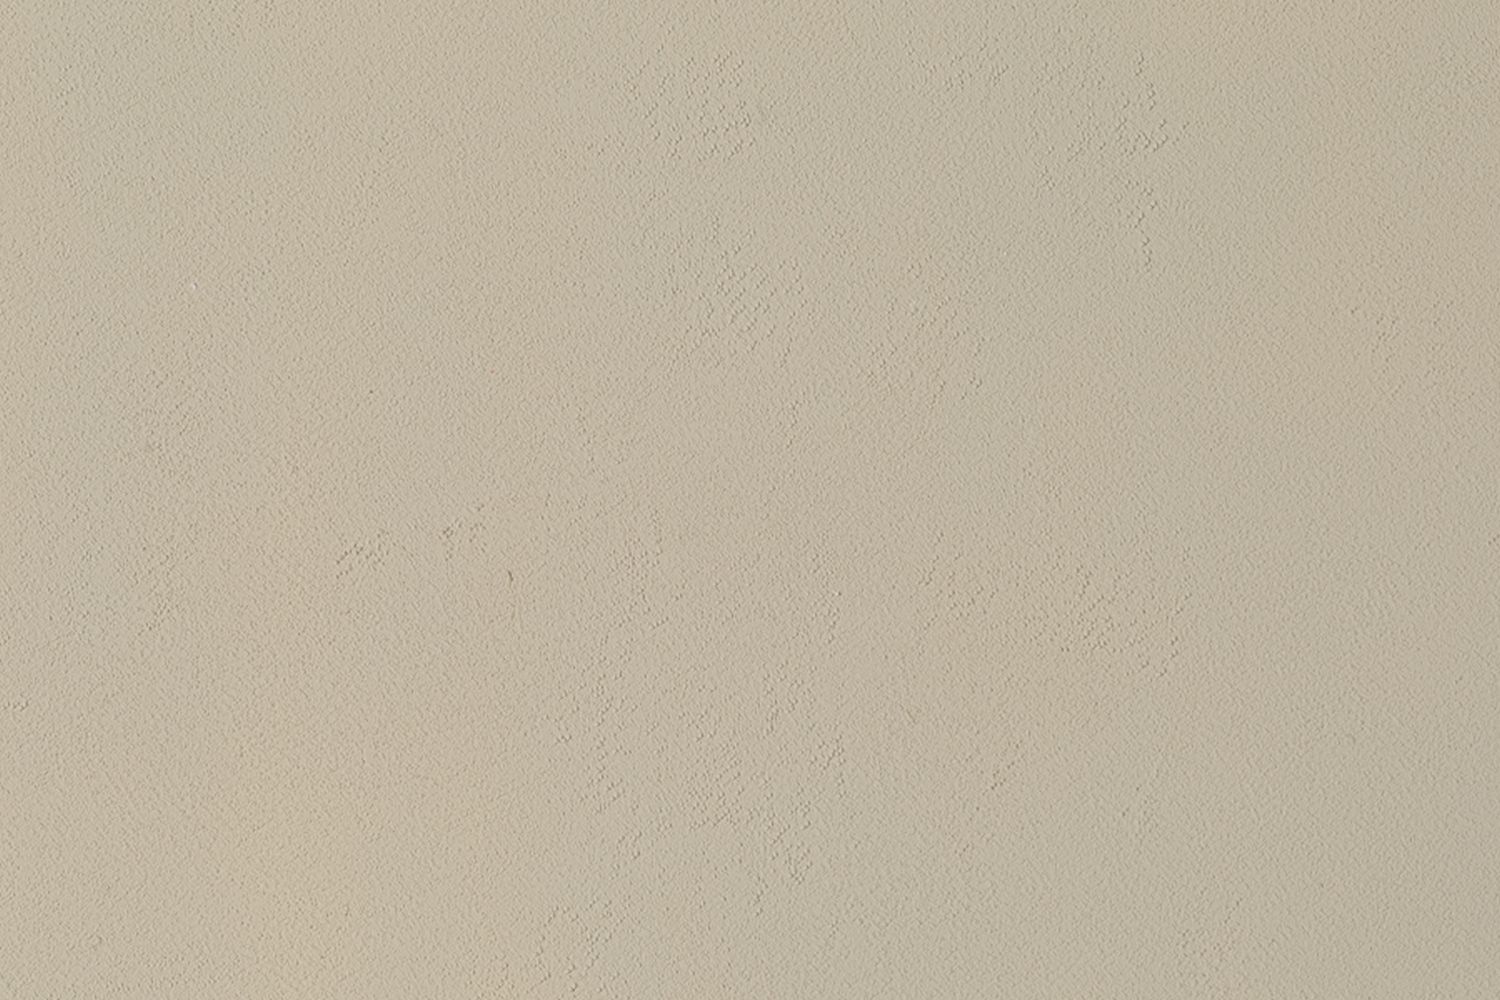 Auhagen 52242 - 2 Mauerplatten geputzt, grau